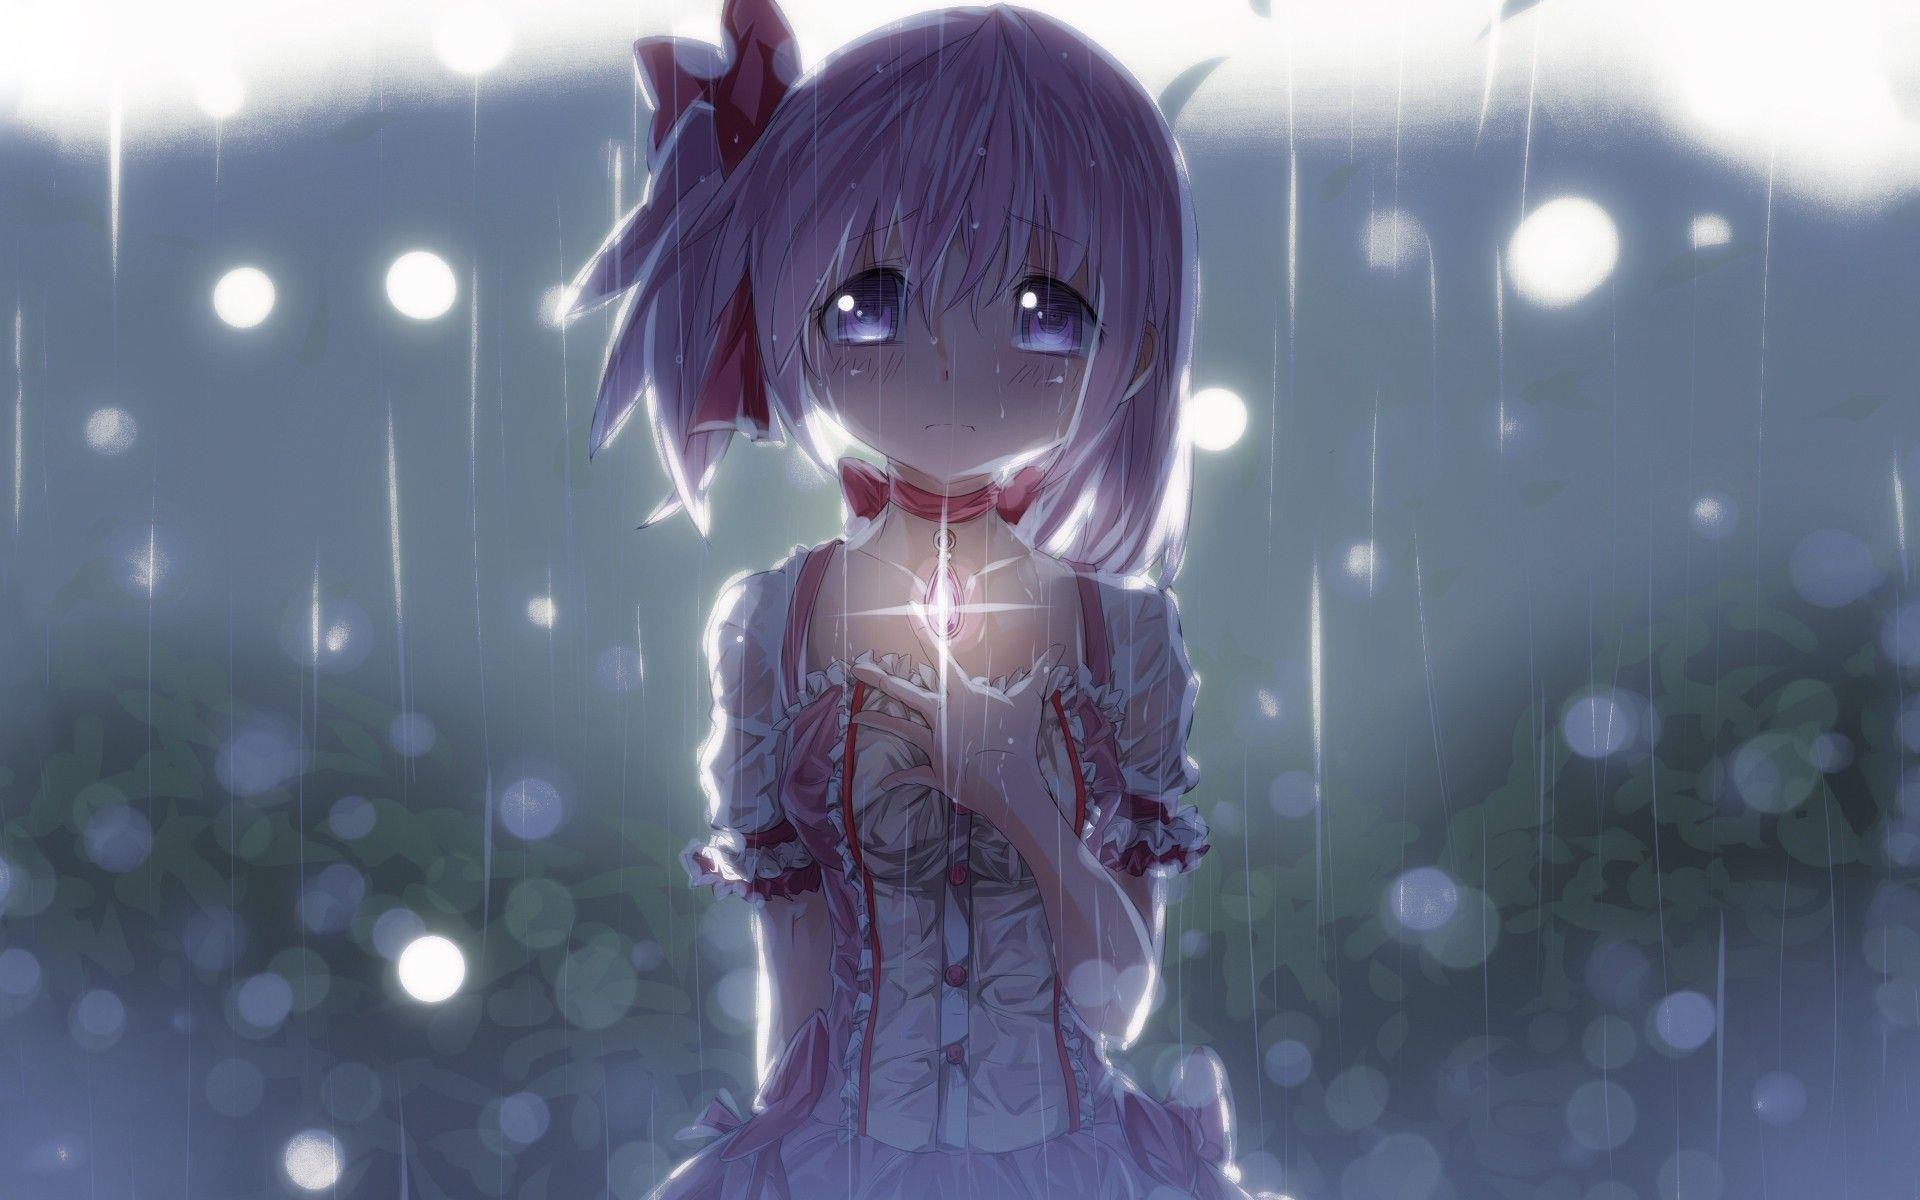 Sad anime girl wallpaper